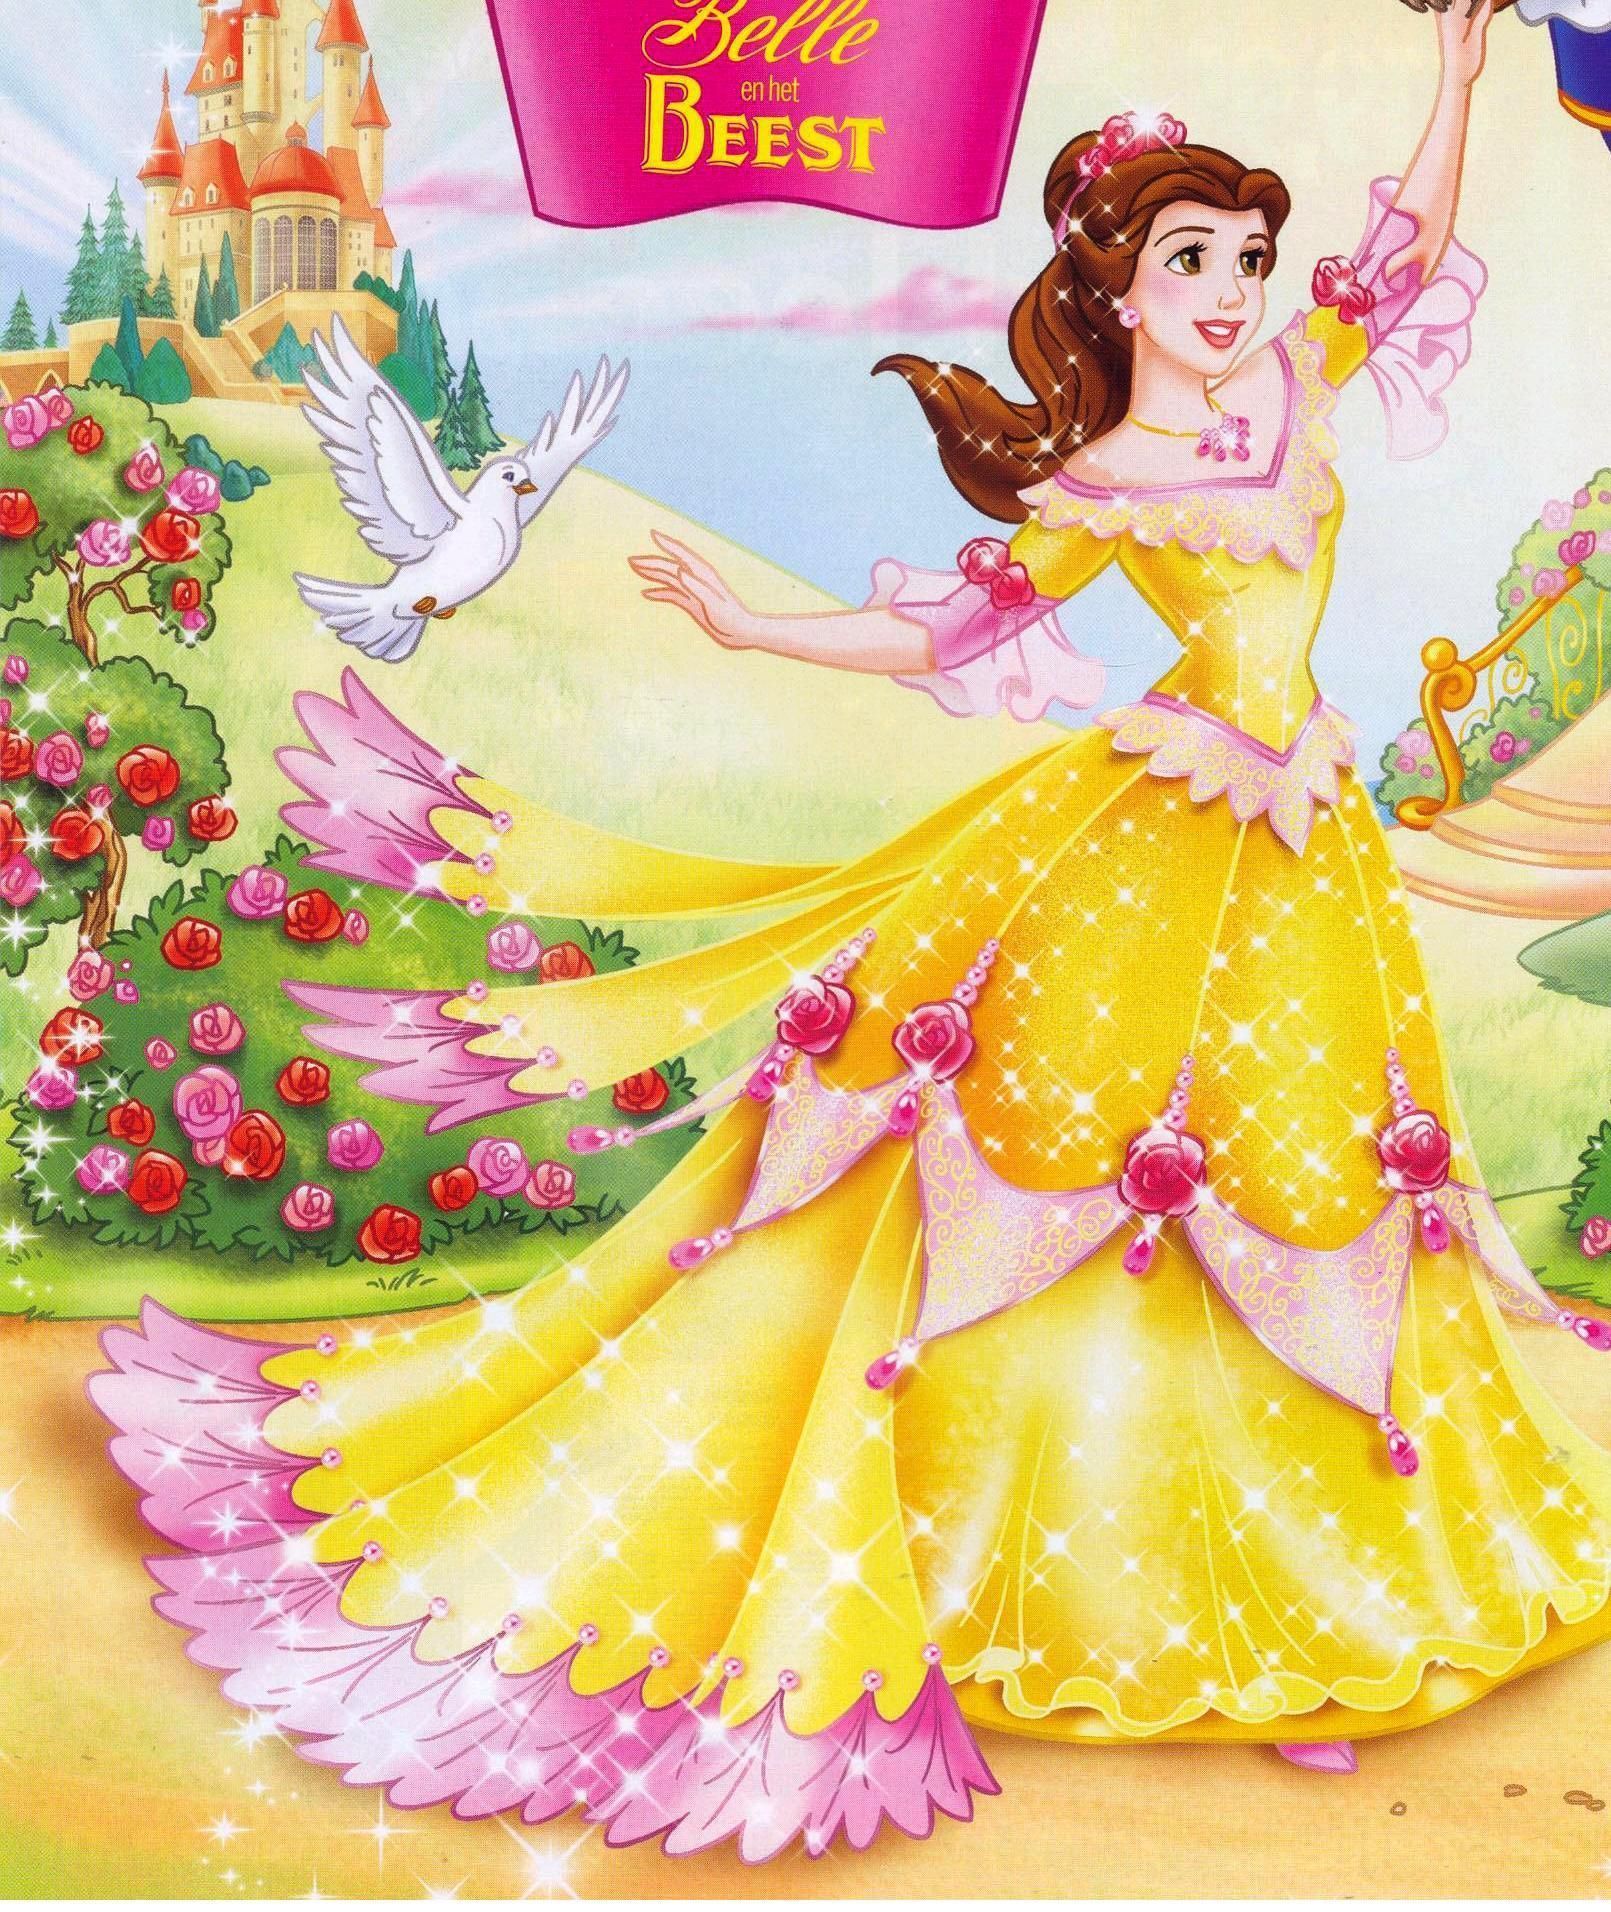 Princesa belle | Disney Geek | Disney Princess Belle, Disney